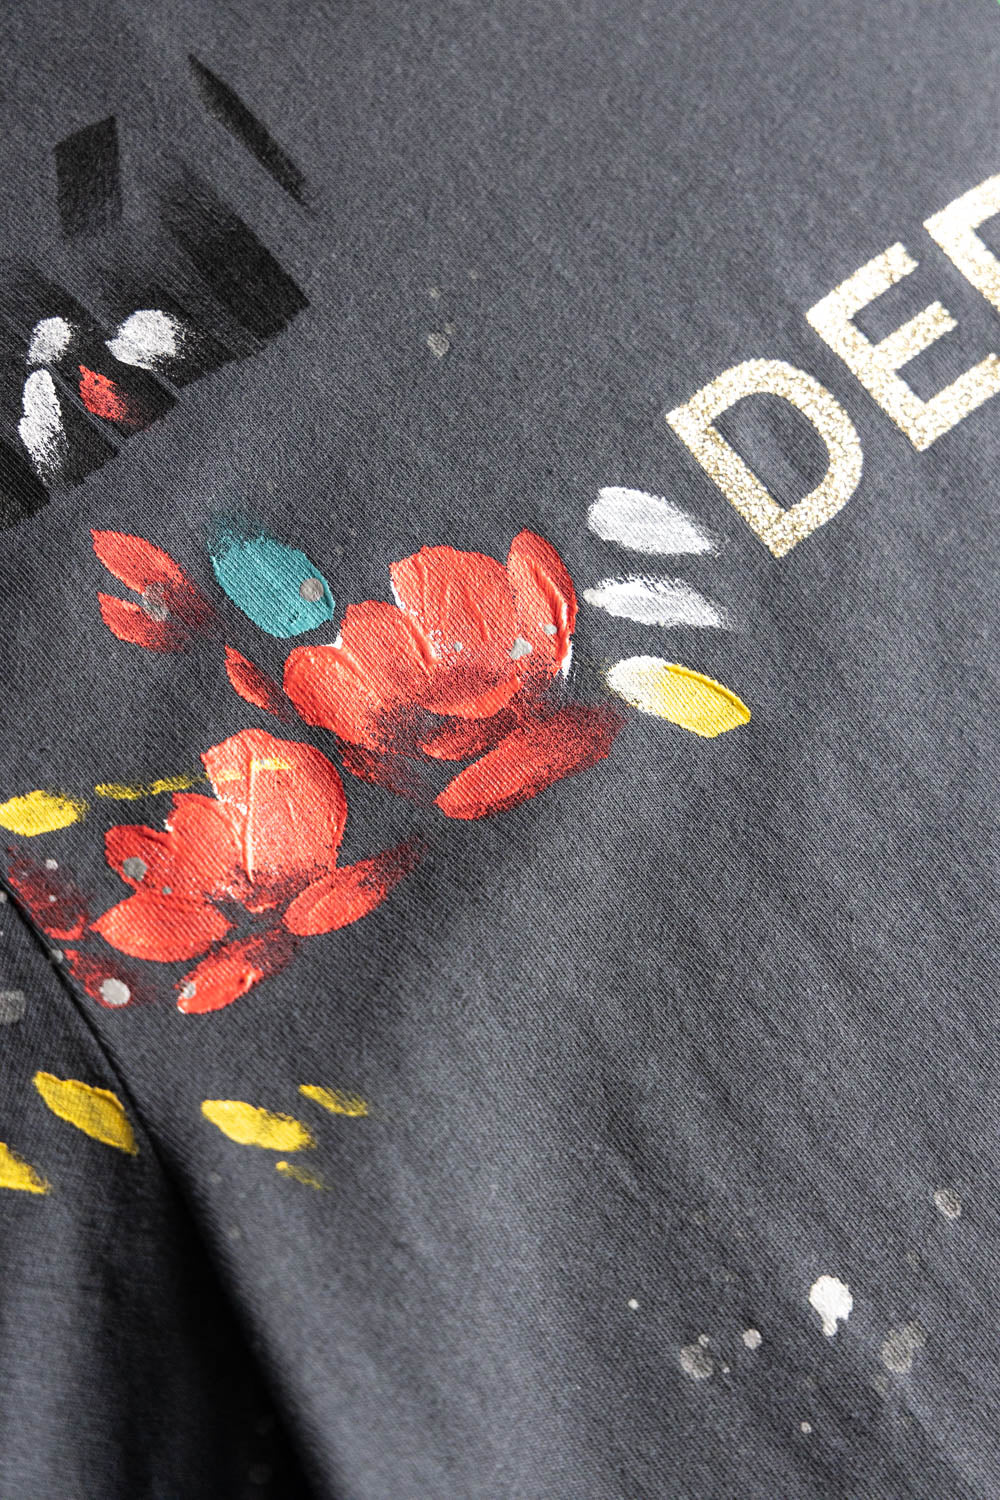 GALLERY DEPT. Blue Paint-splatter Logo Cotton T-shirt